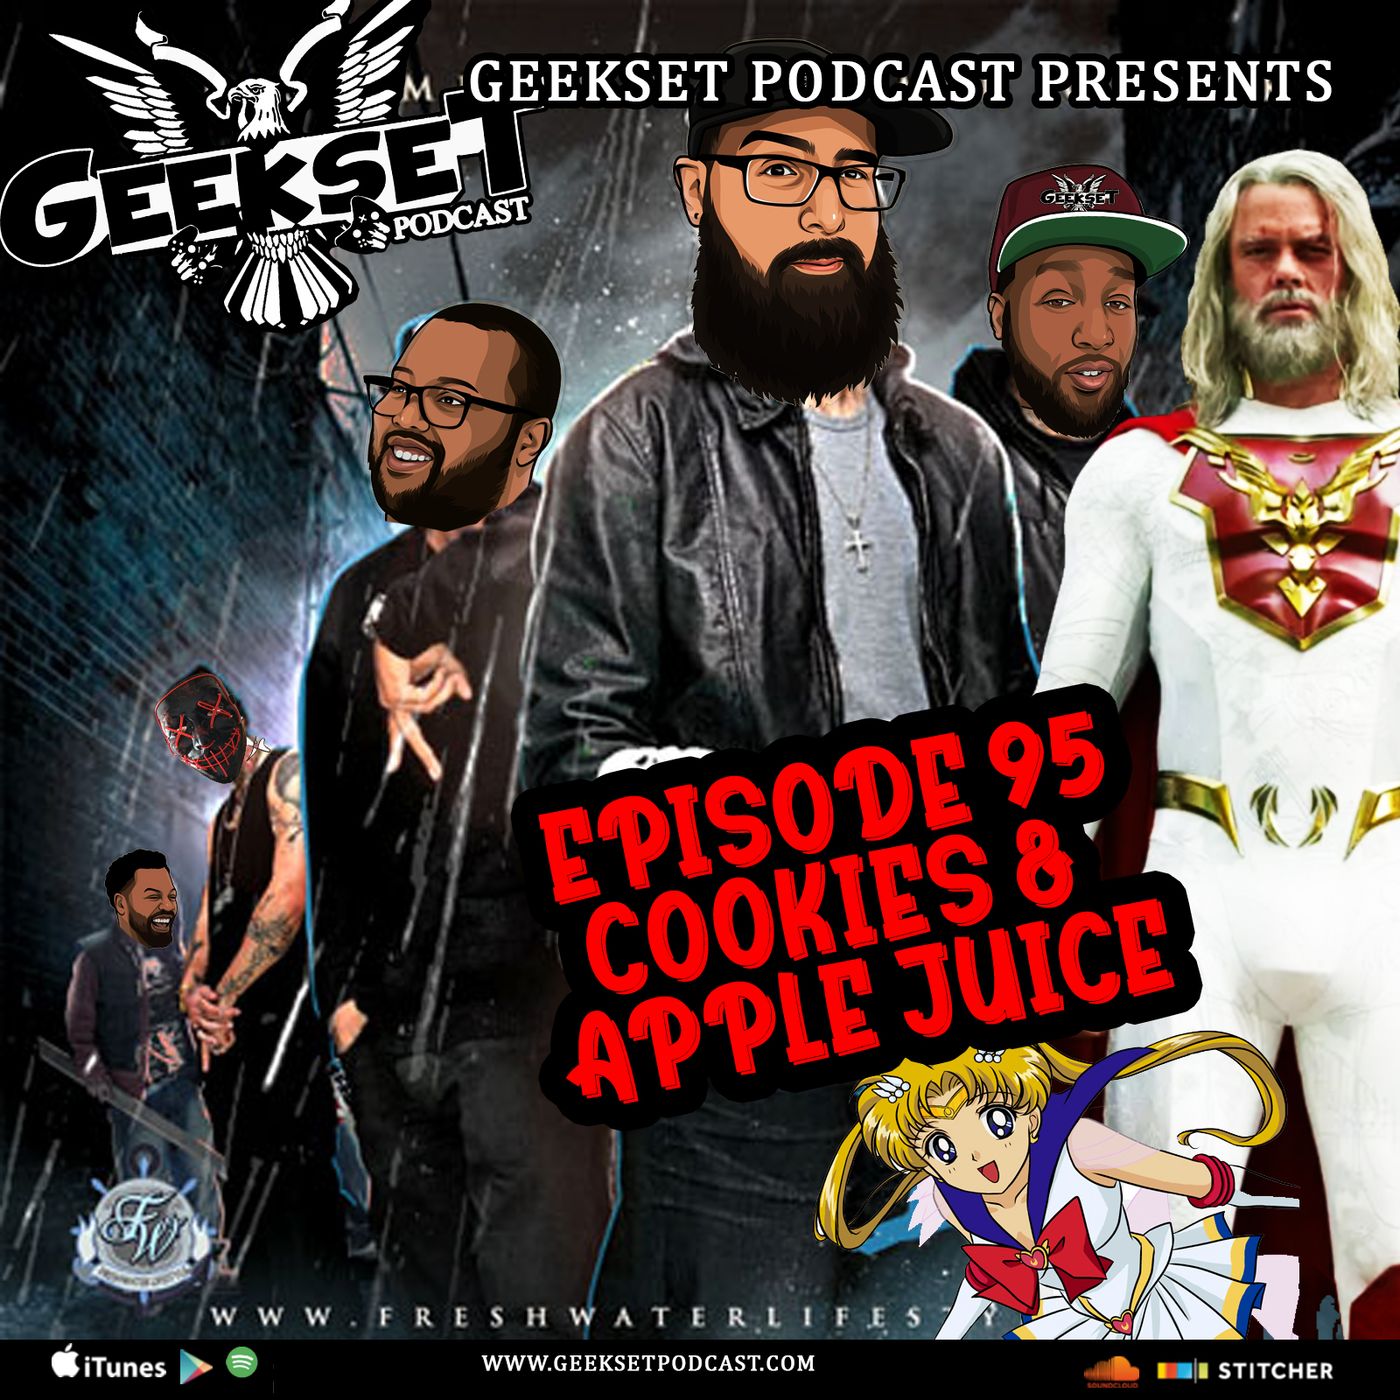 Geekset Episode 95: Cookies & Apple Juice